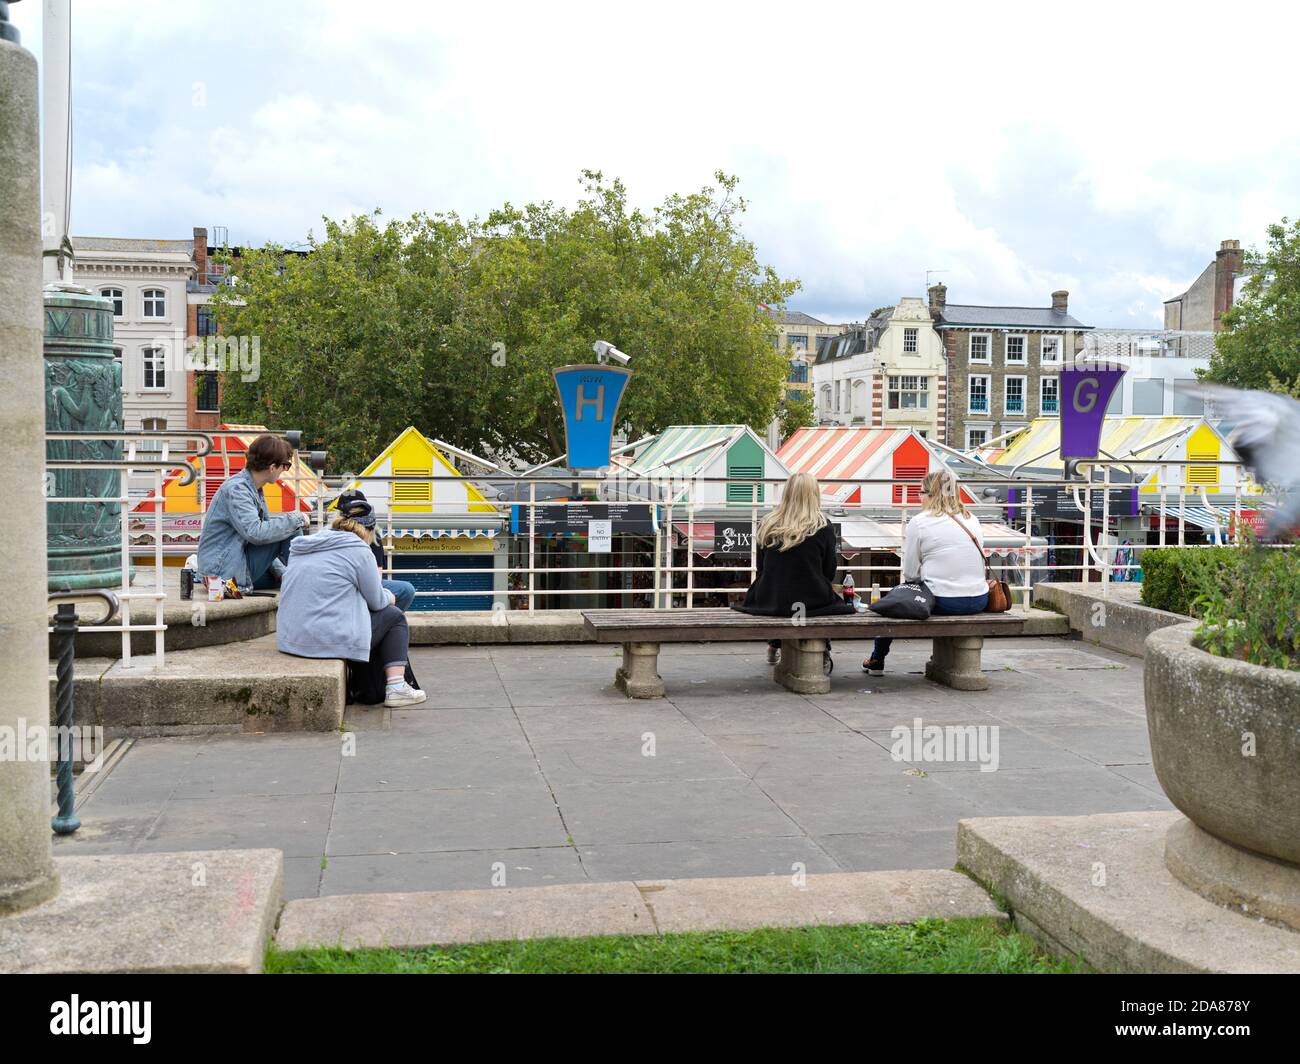 Estudiantes sentados aparte mirando el mercado Norwich durante las regulaciones de Covid en 2020 Foto de stock